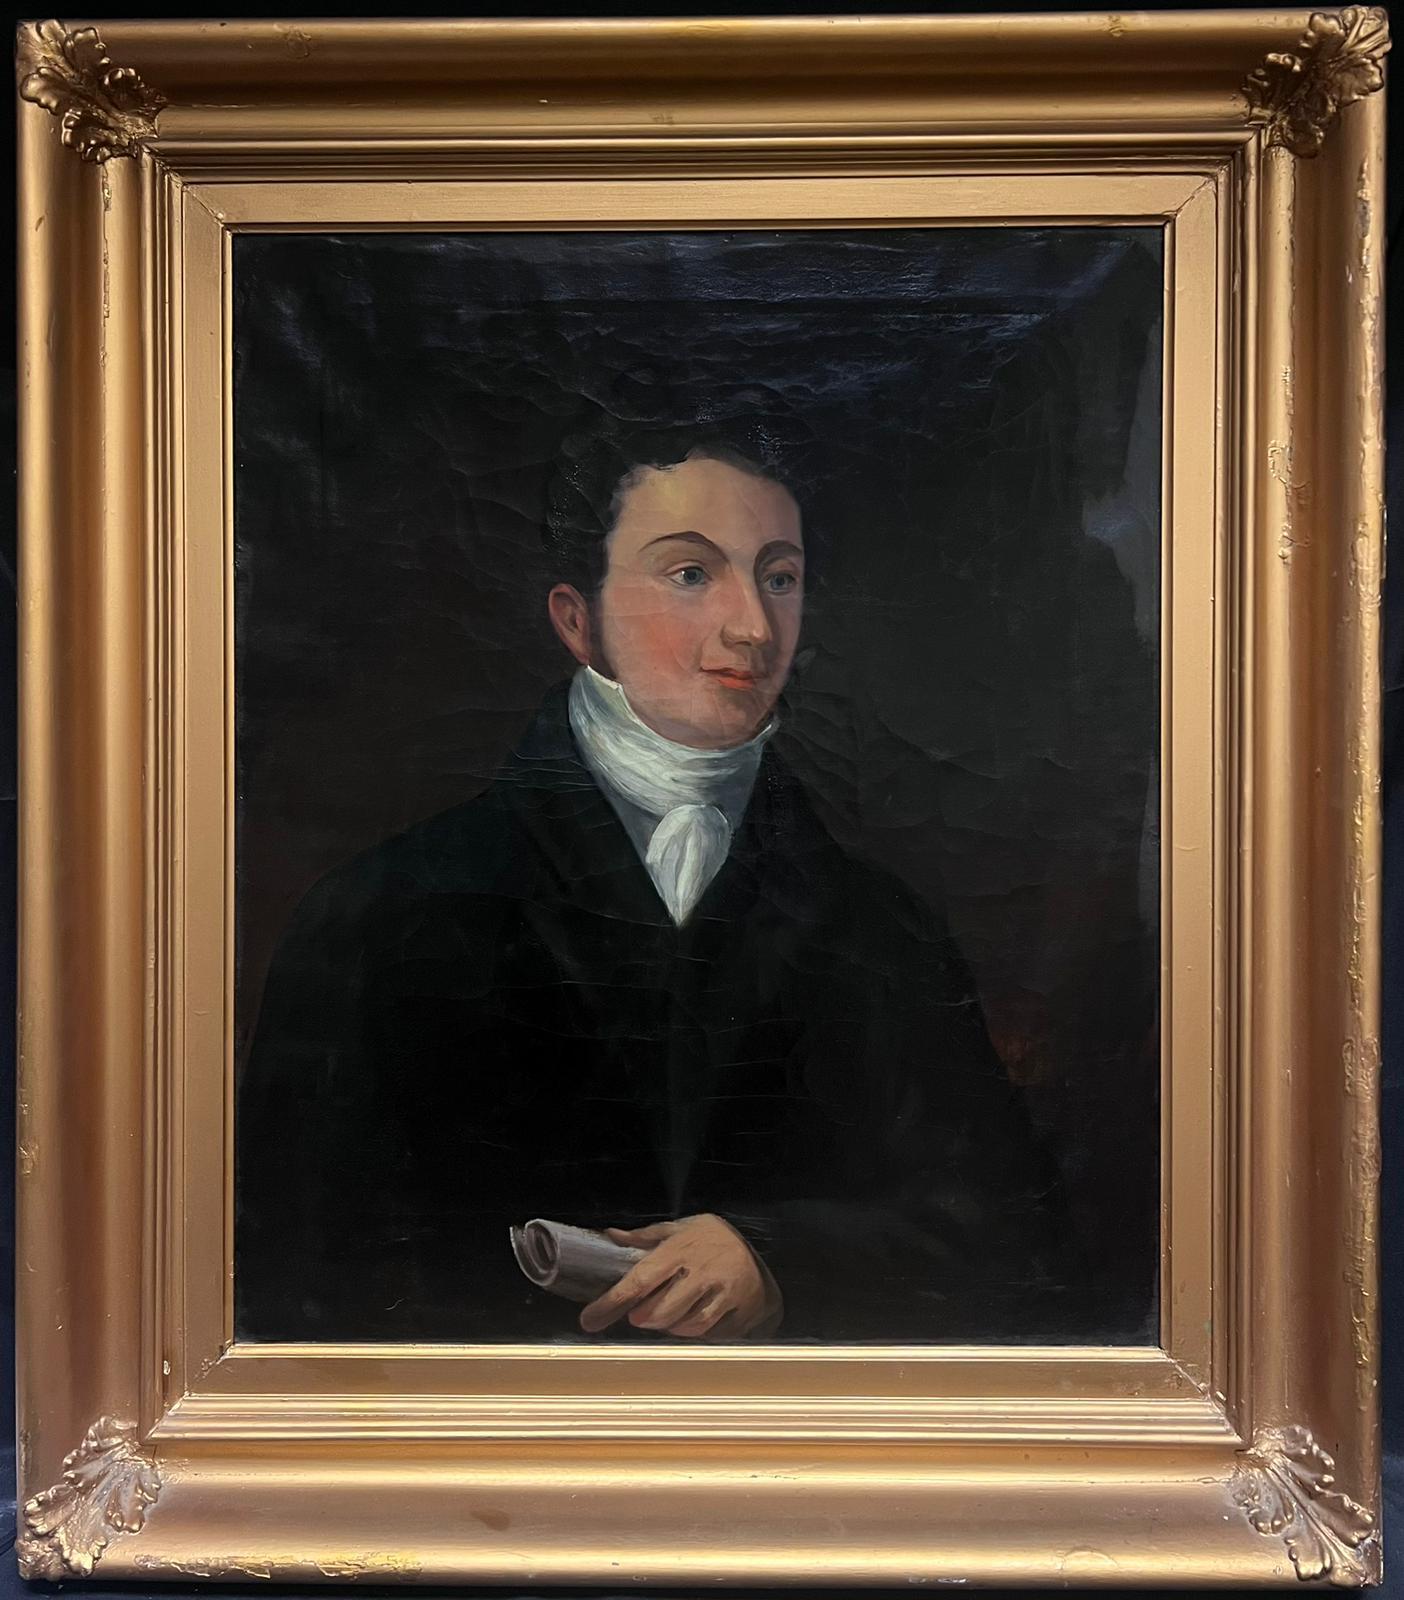 Portrait Painting English 1820's - Très grand portrait anglais des années 1820, Dapper Young Gentleman, période dramatique